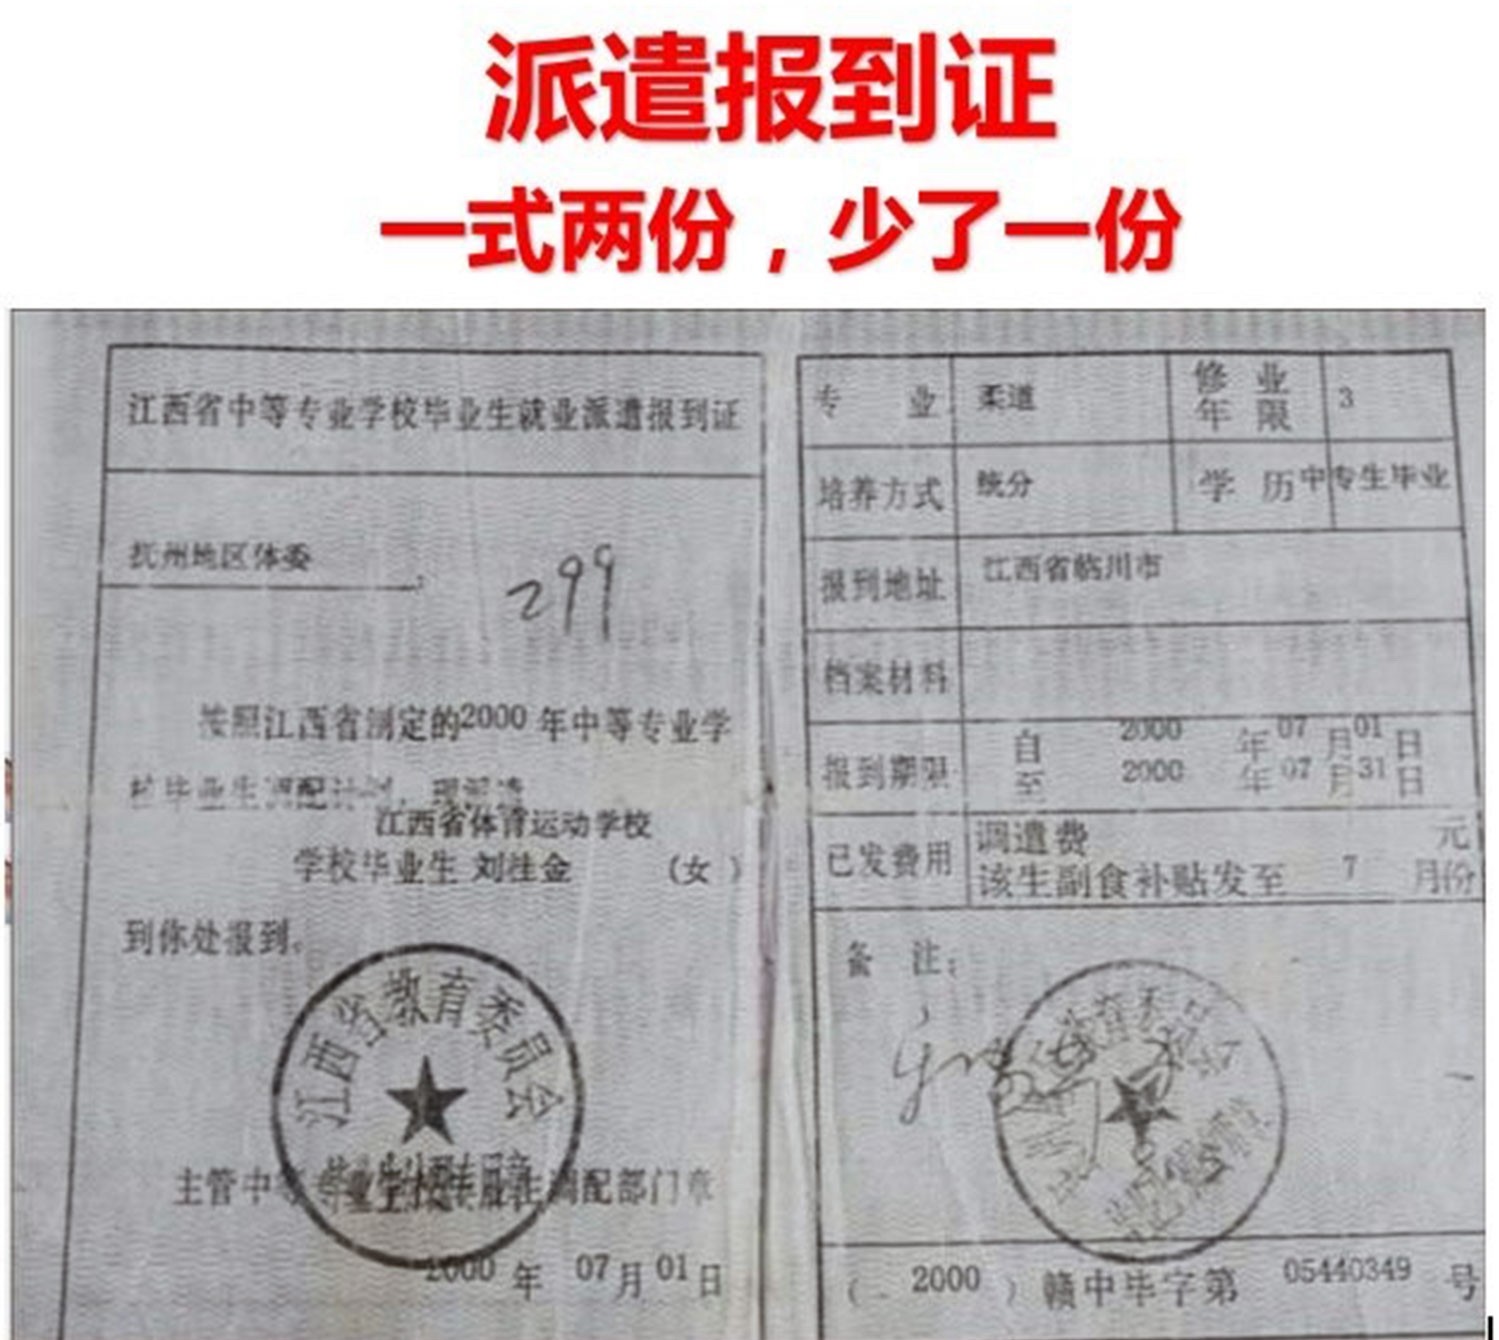 刘桂金毕业派遣报道证，一式两份，另一份离奇失踪。.jpg